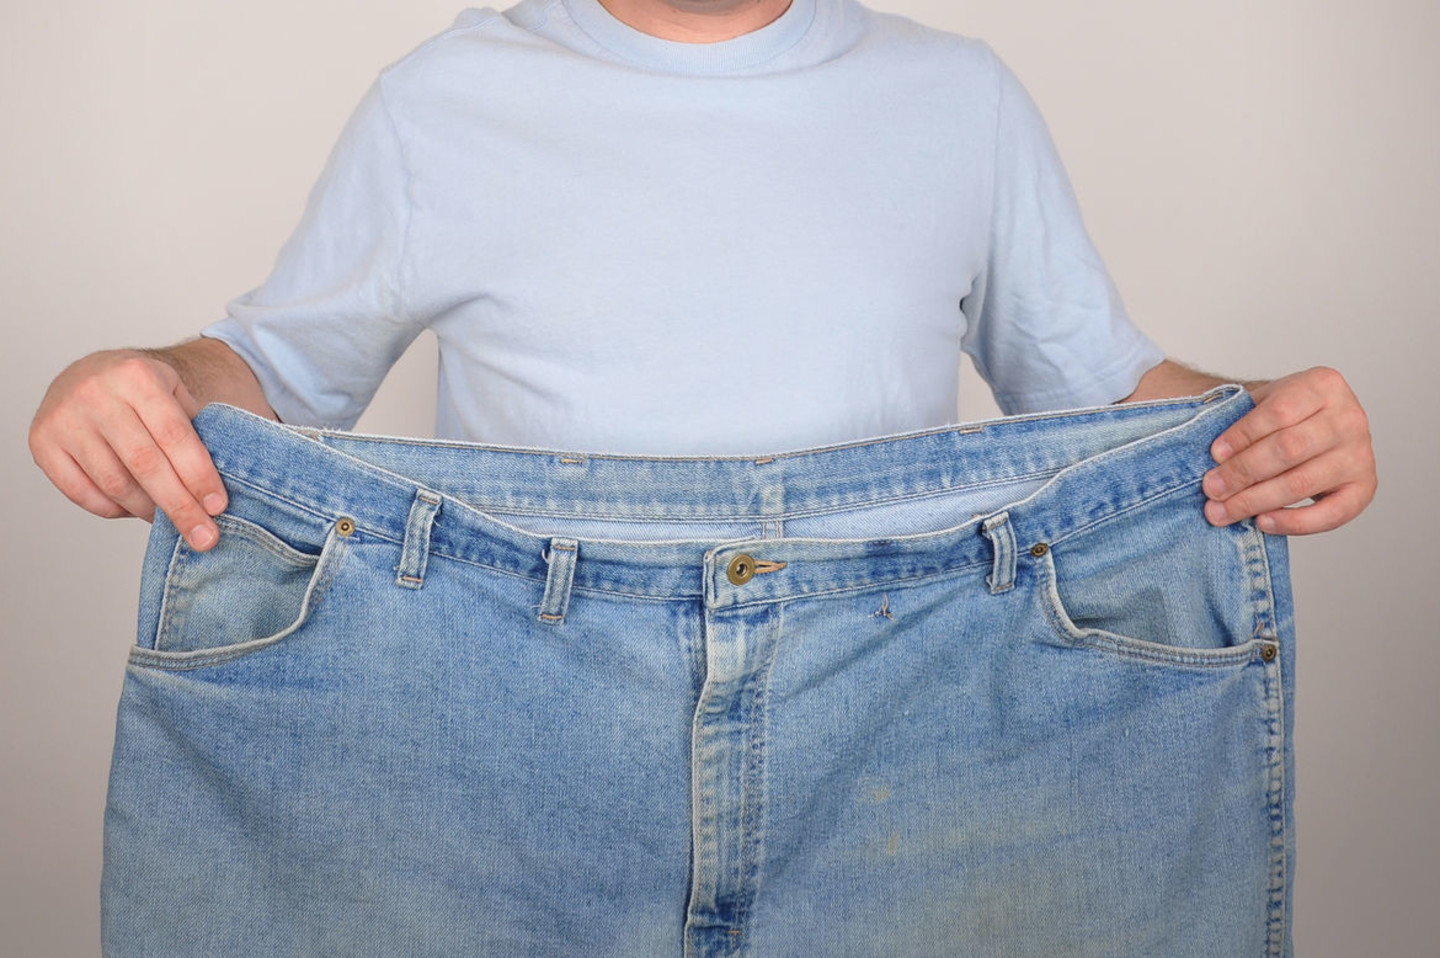 gali prisirišti plėvelė padės numesti svorį 50 svarų riebalų nuostolis